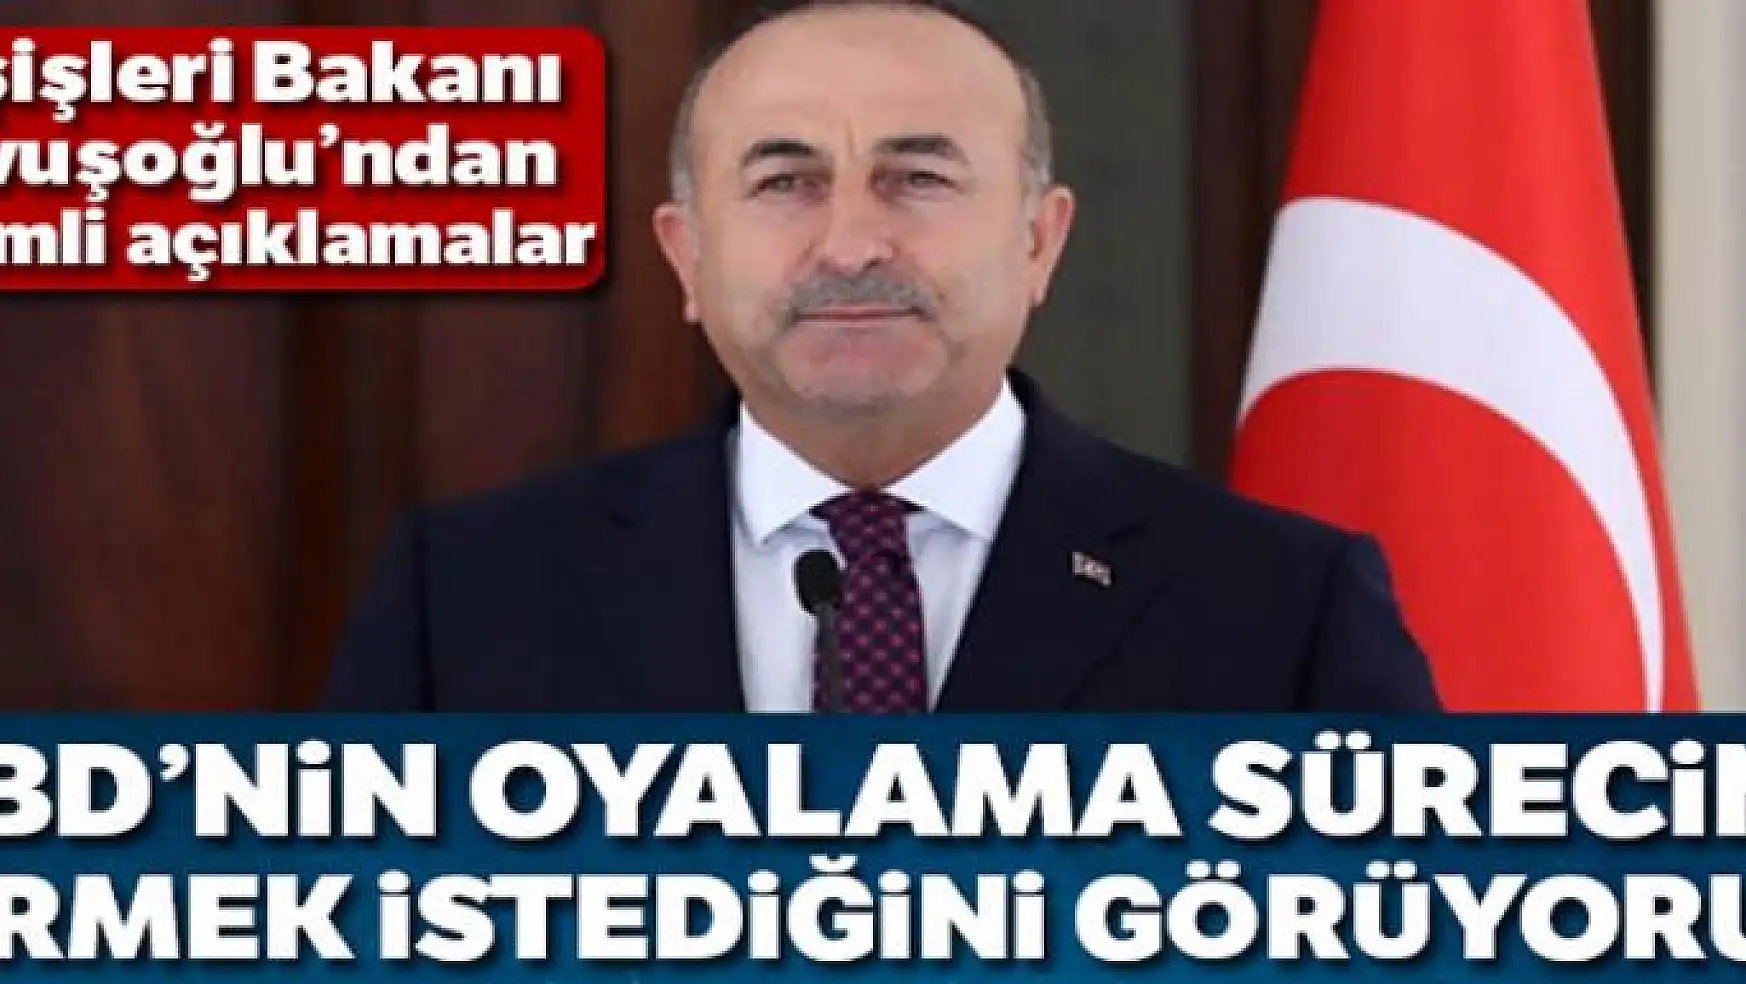 Bakan Çavuşoğlu: 'ABD'nin oyalama sürecine girmek istediğini görüyoruz'